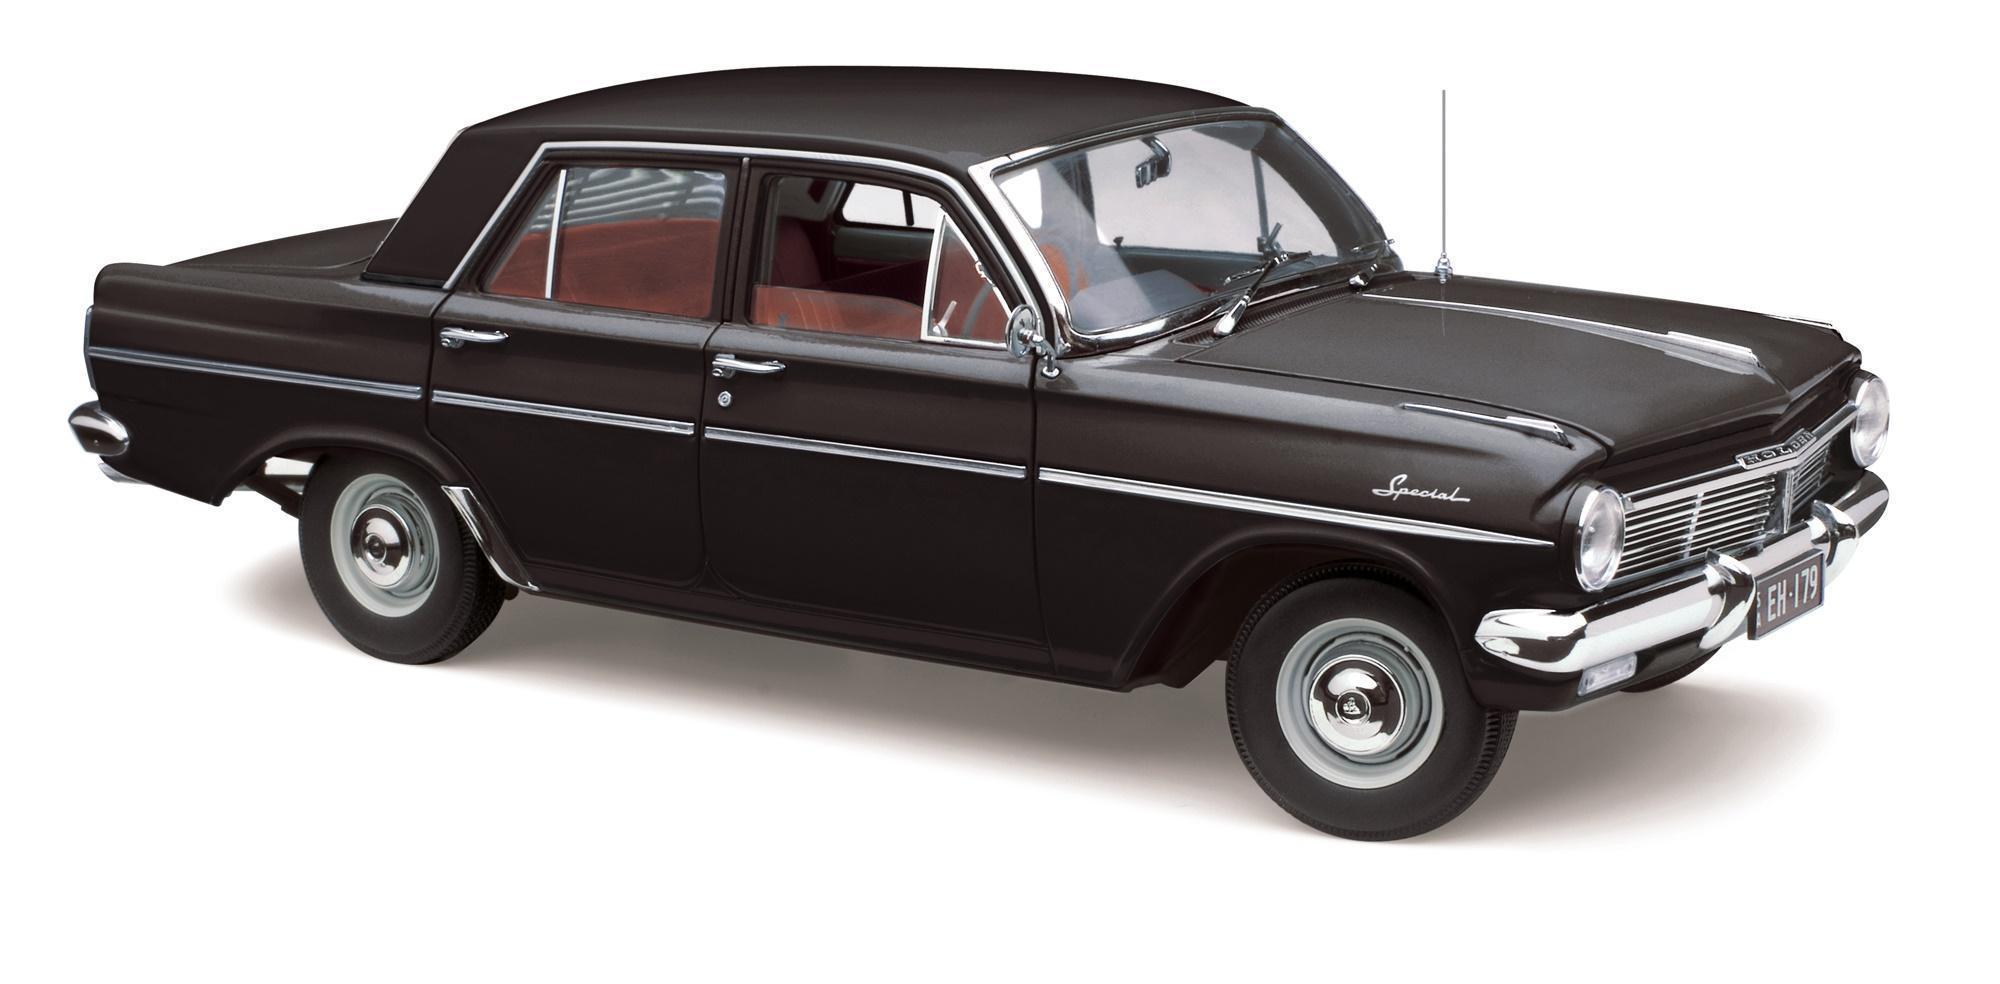 1963 Holden EH Special Warrigal Black Die Cast Model Car 1:18 